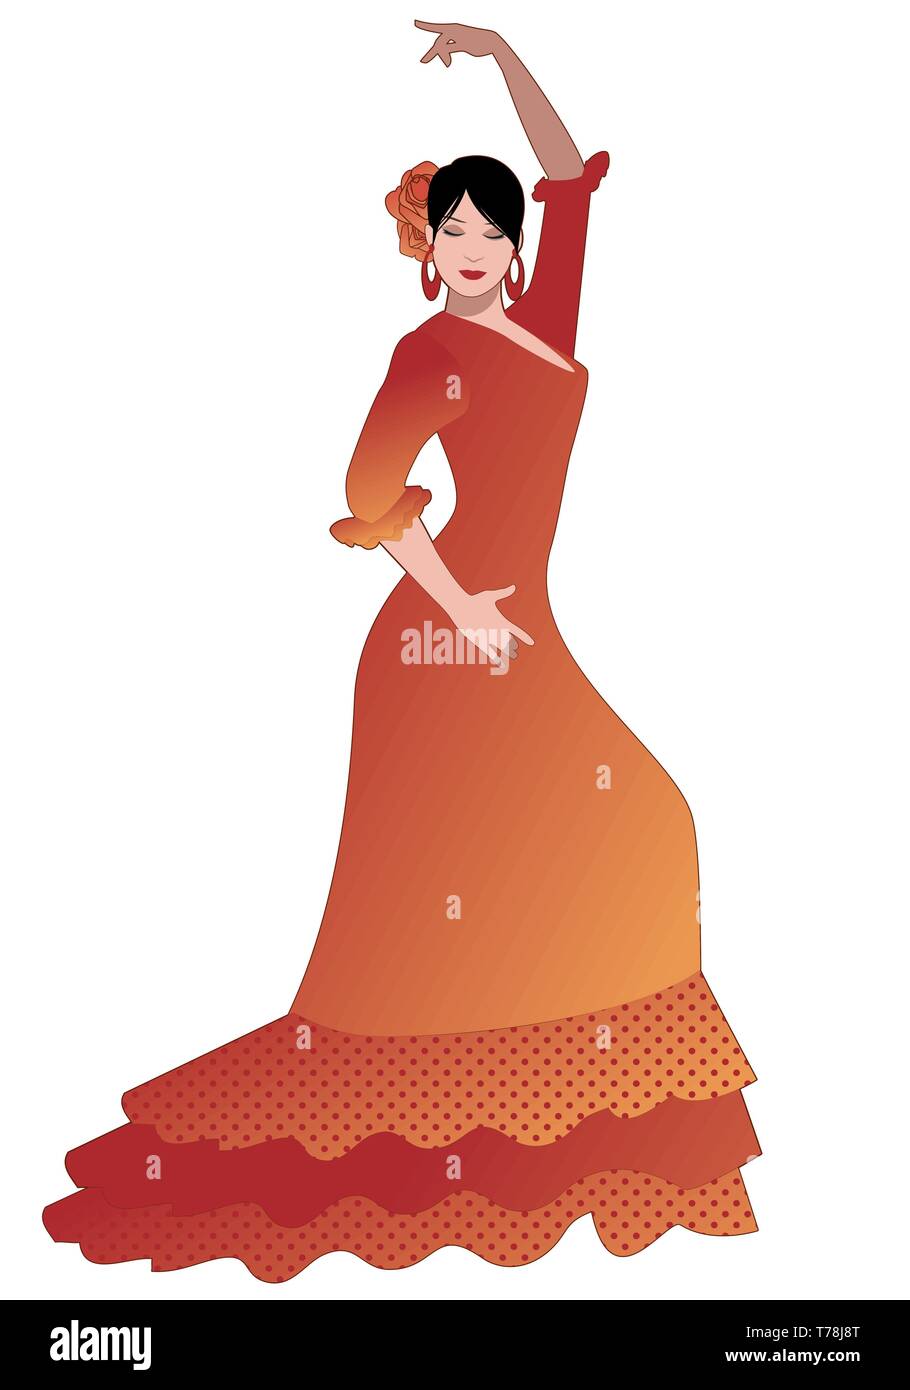 Spanische Flamenco Tänzerin Frau flamenco Kleid und Blume im Haar tanzen  auf weißem Hintergrund Stock-Vektorgrafik - Alamy